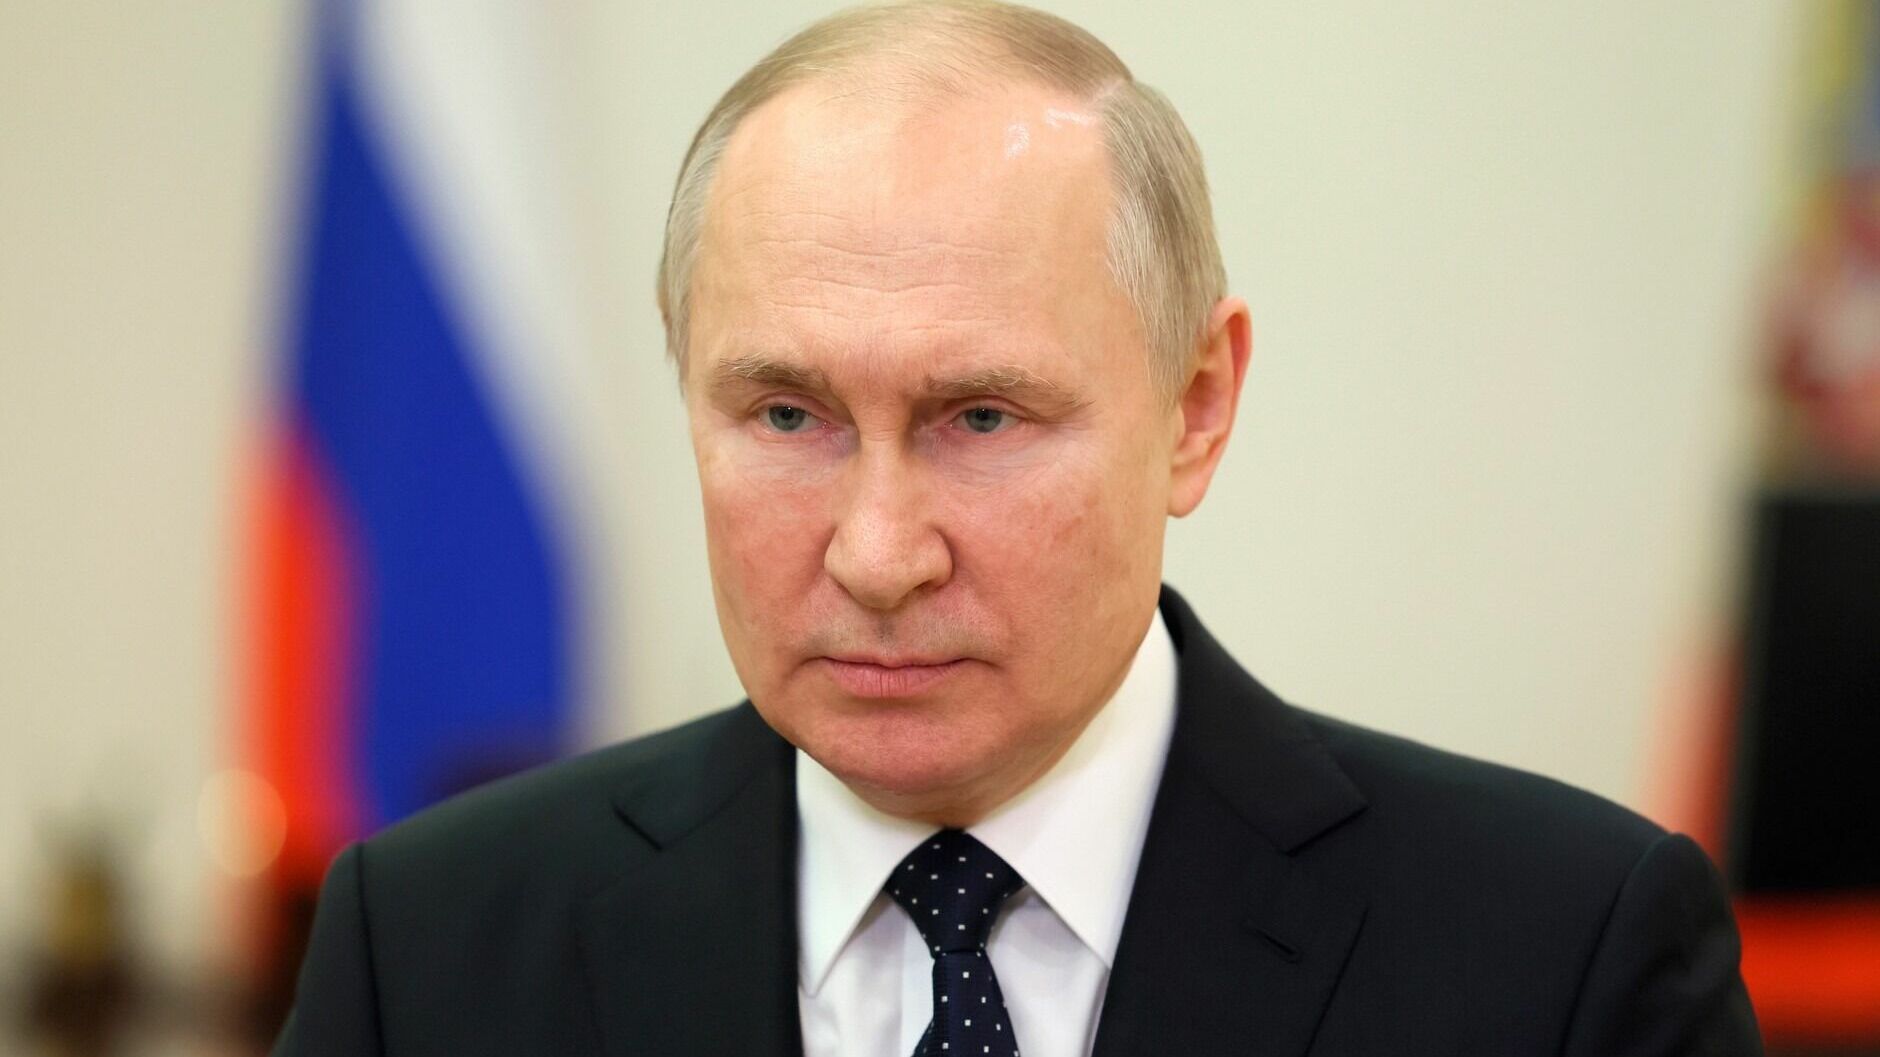 Путин назвал преждевременной отправку студенческого стройдесанта в новые регионы